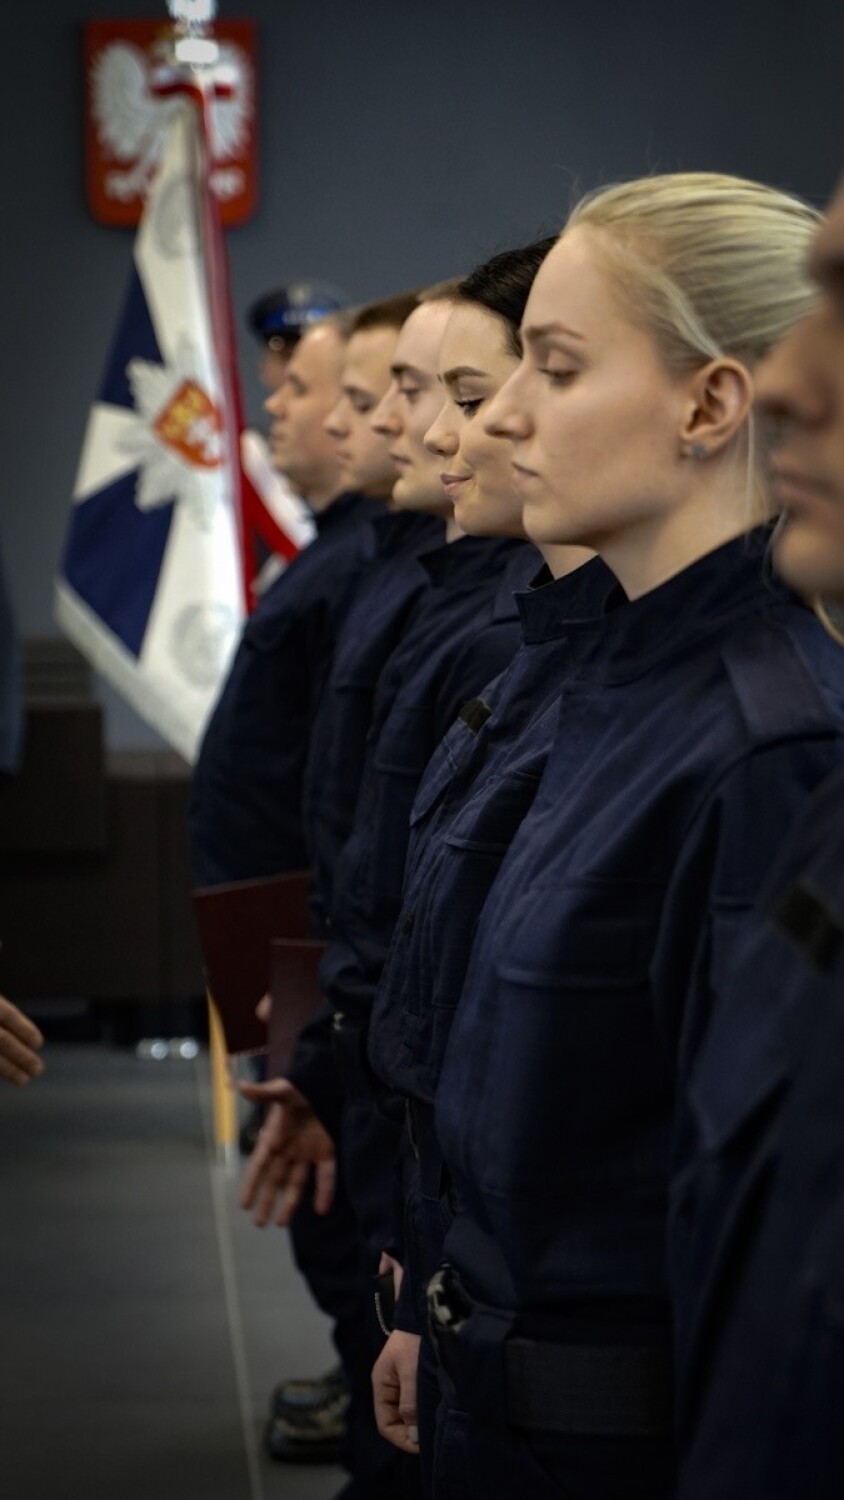 48 nowo przyjętych do służby pomorskich policjantów złożyło ślubowanie. Odznaczenia państwowe i resortowe dla ich starszych kolegów